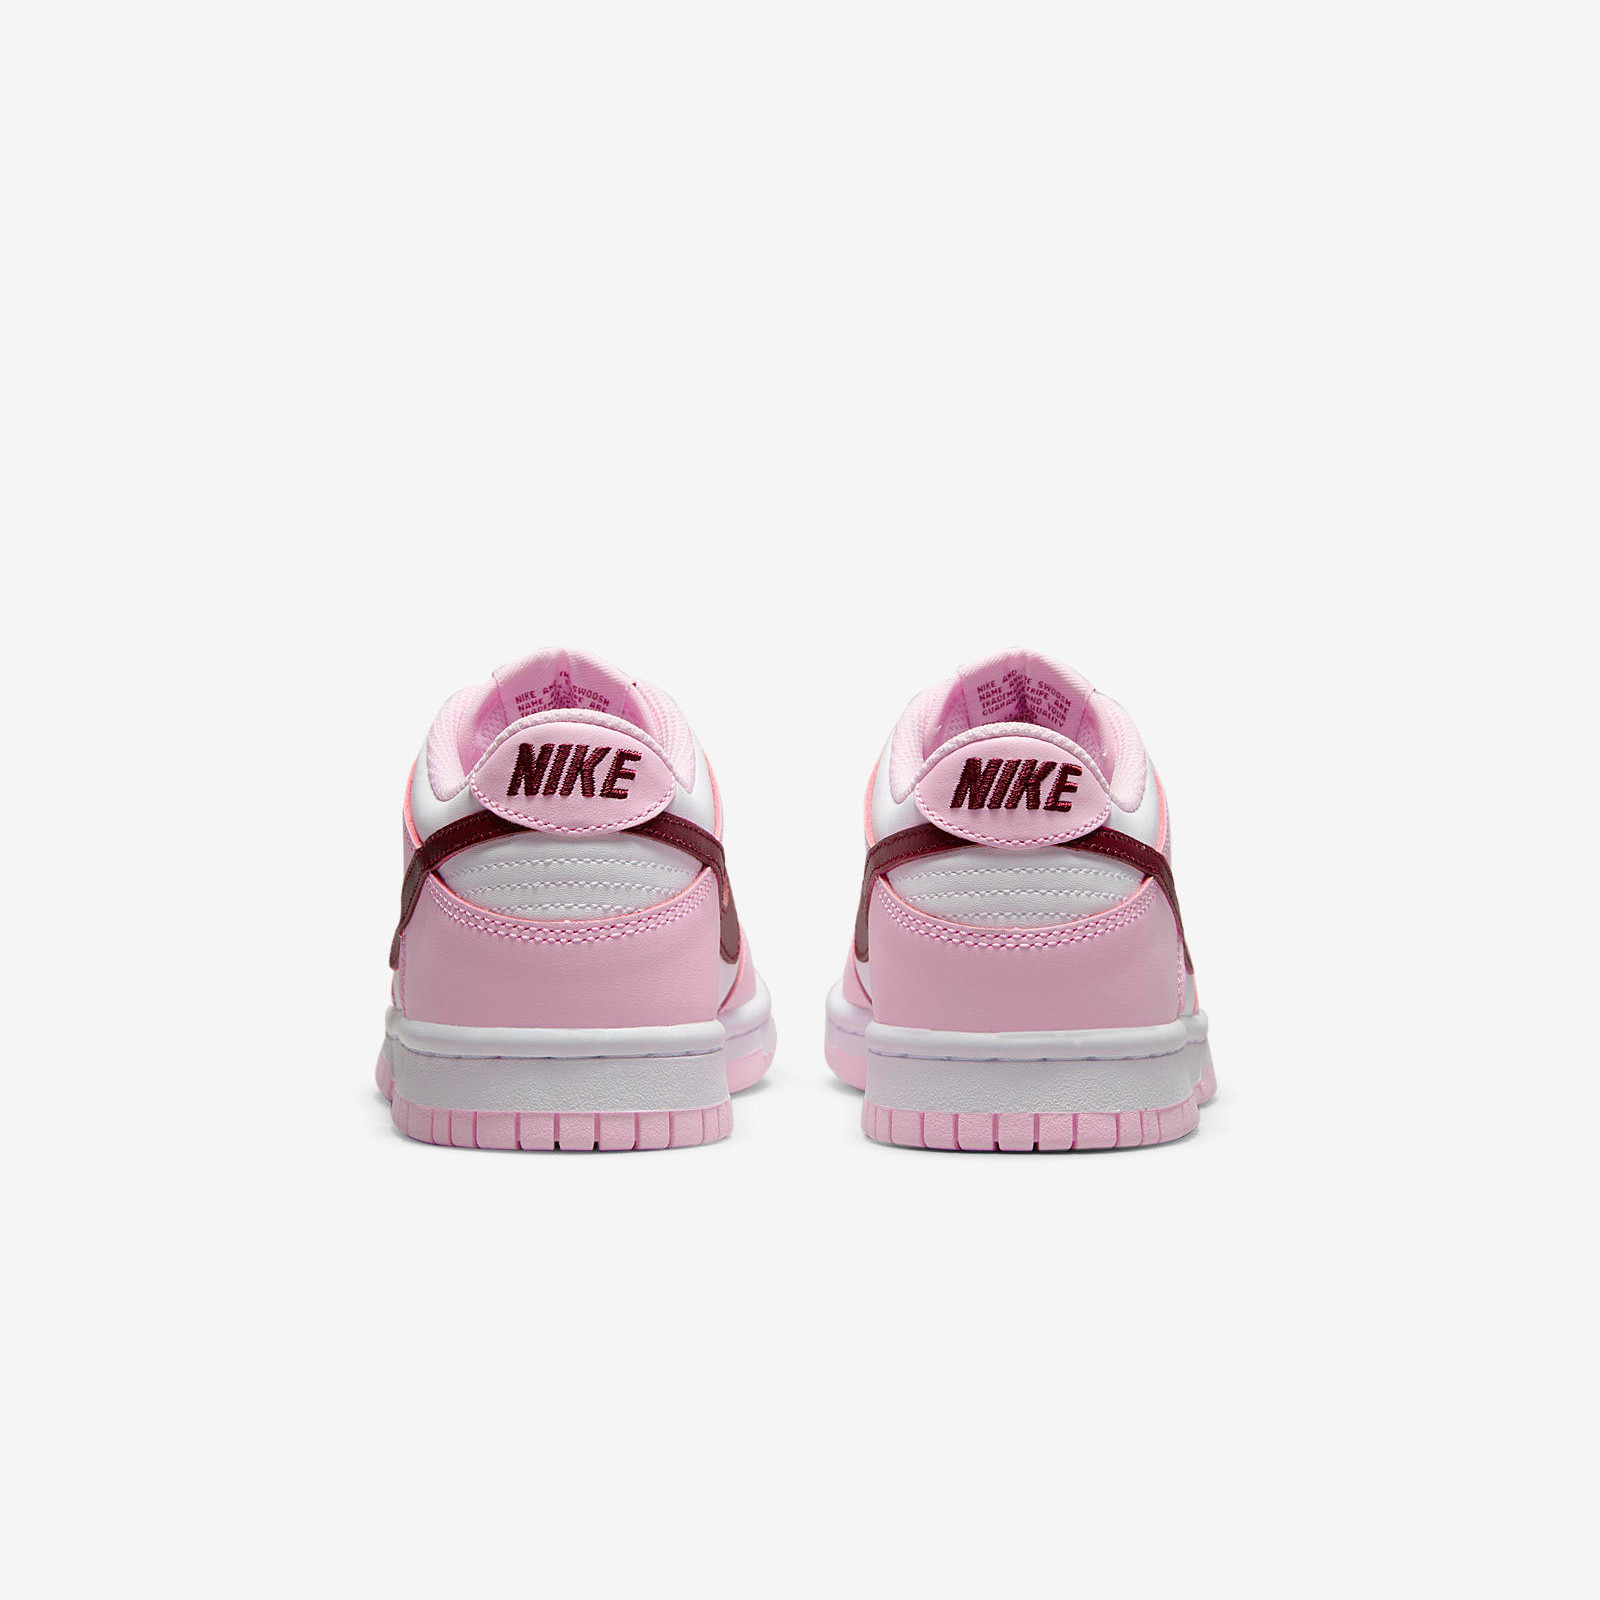 Nike Dunk Low
« Pink Foam »